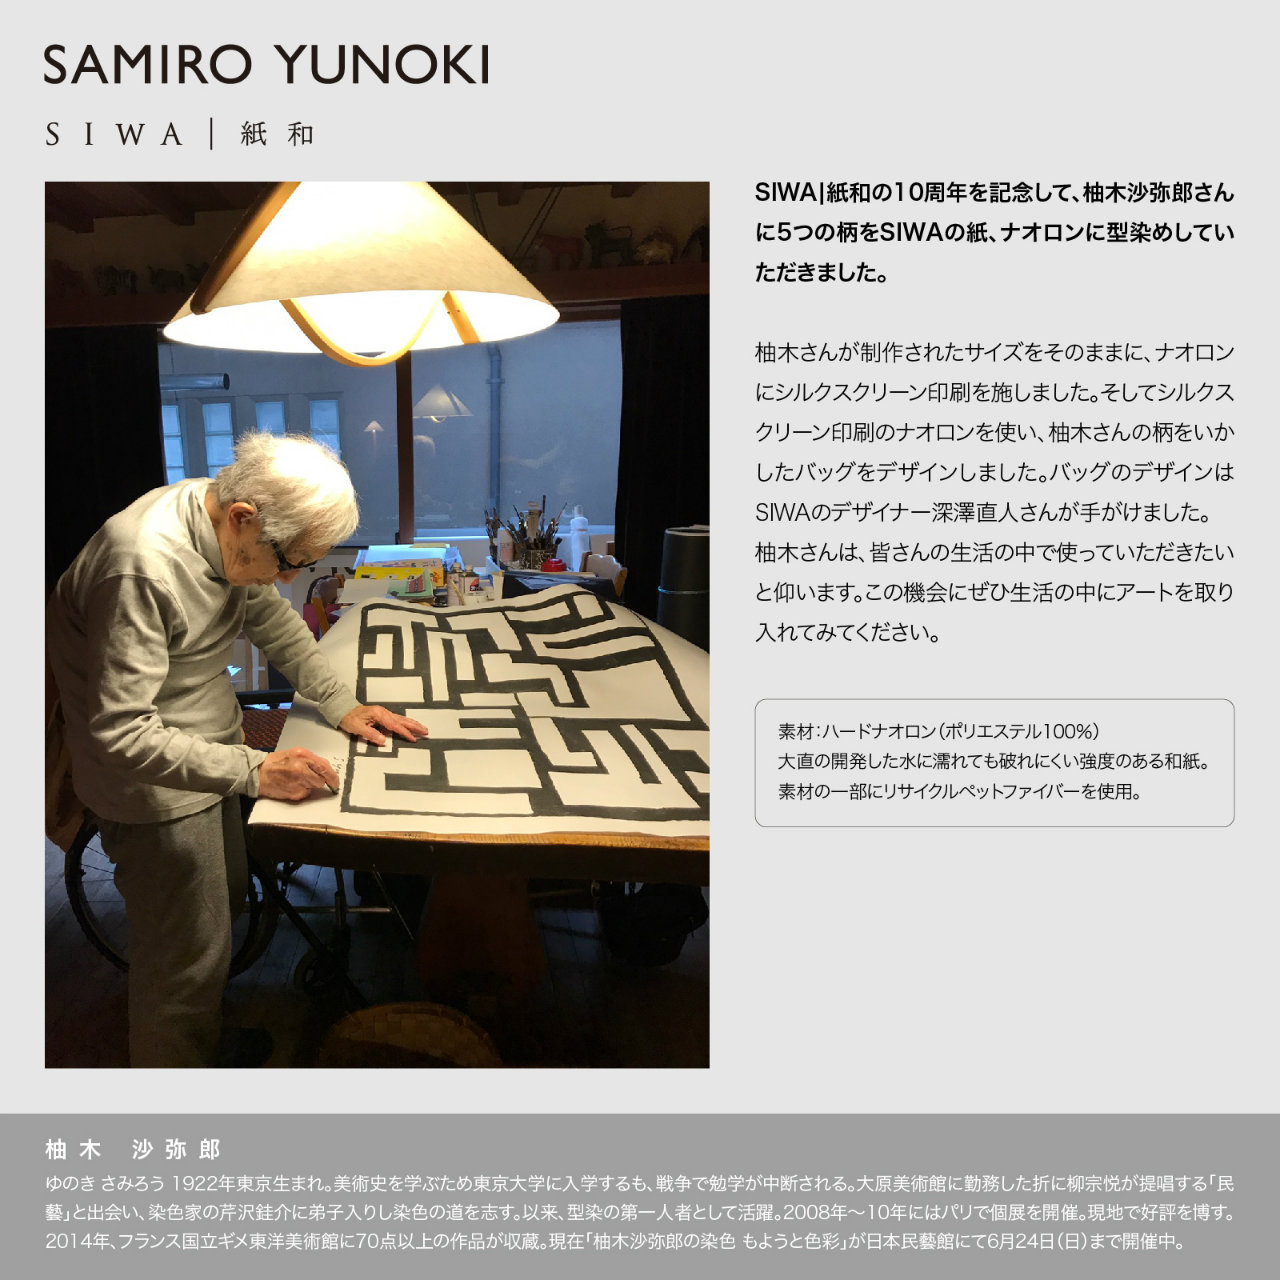 SAMIRO YUNOKI SIWA バッグ フラット横ファスナー付 05ブラウン（柚木 沙弥郎 紙和）